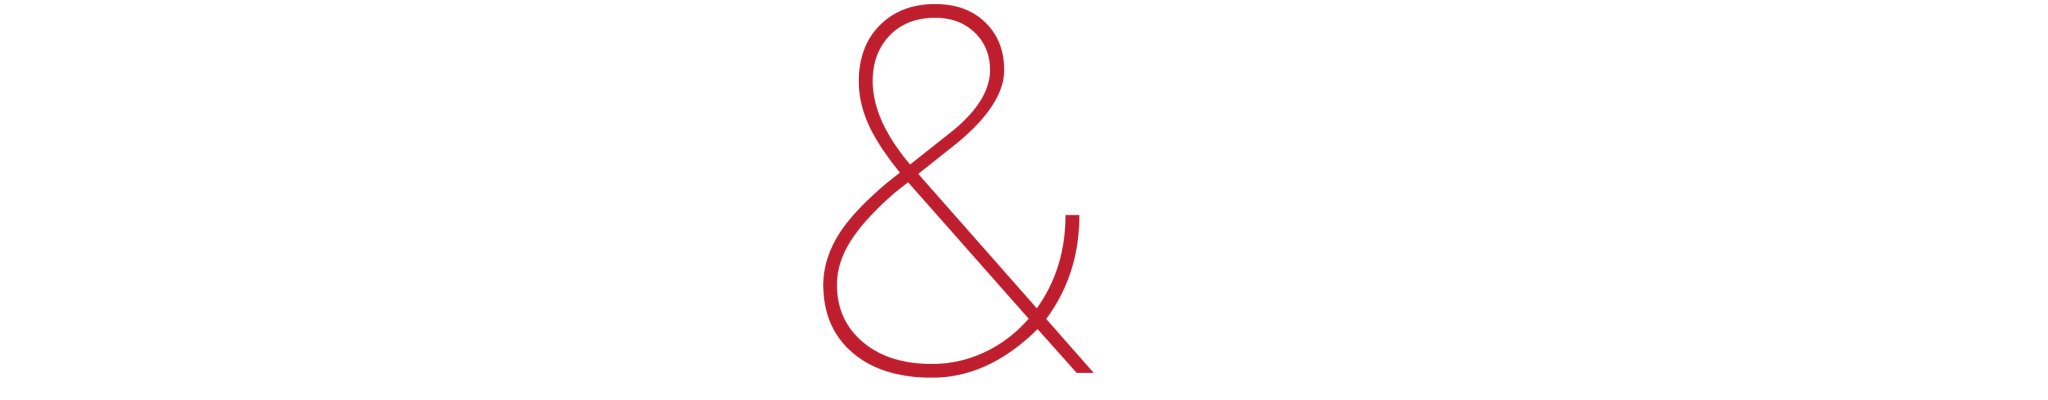 RibbonRudolph-Logo-Light-1-e1697601587999-2048x400